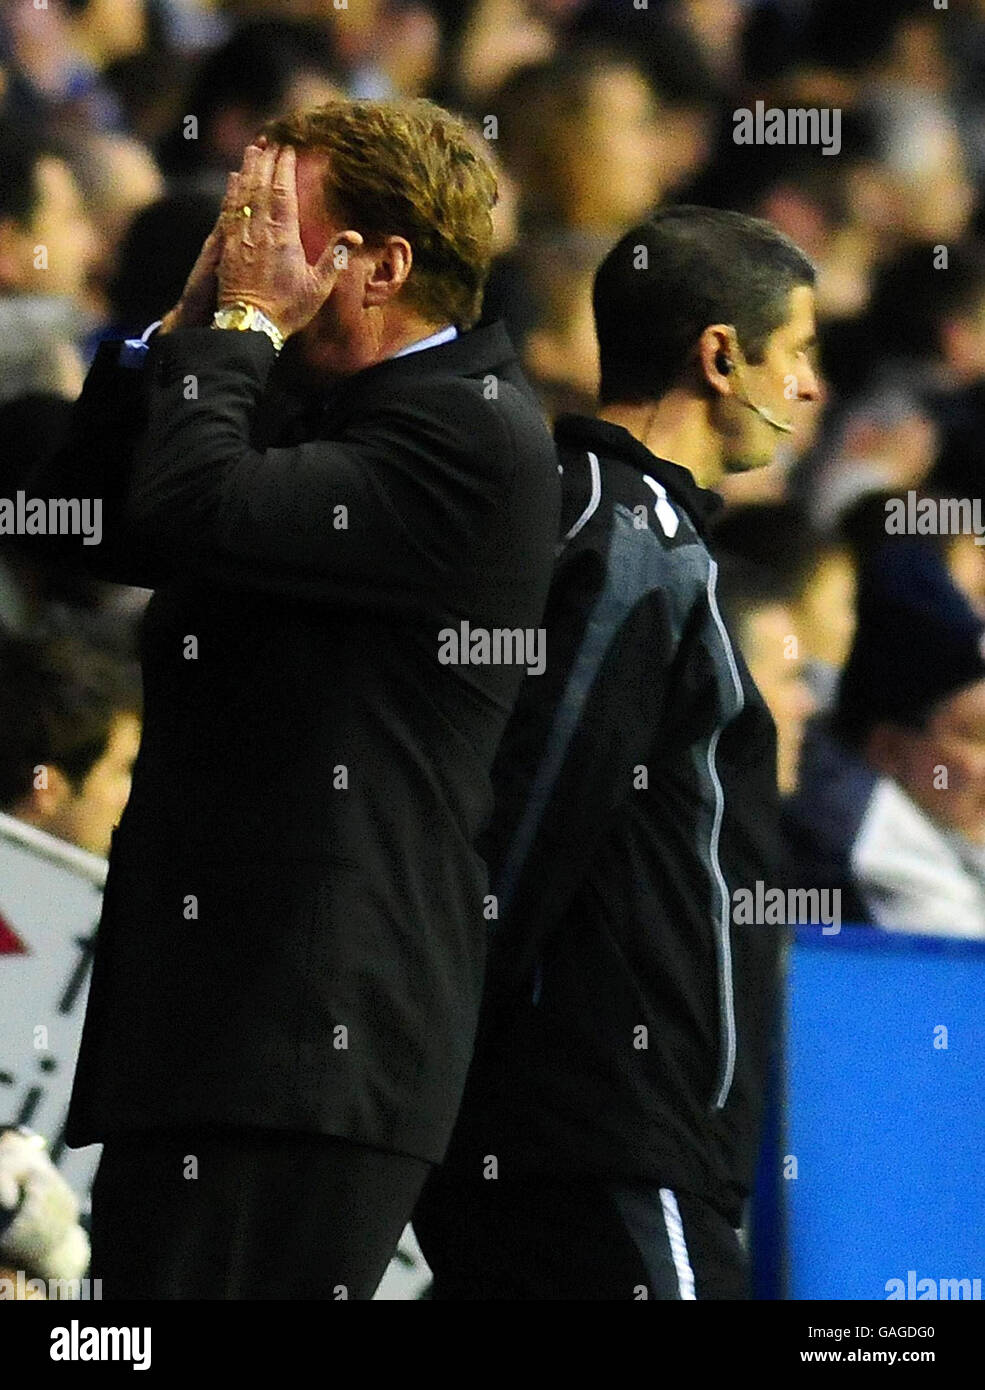 El gerente de Portsmouth, Harry Redknapp, reacciona durante el partido Barclays Premier League en el Madejski Stadium, Reading. Foto de stock